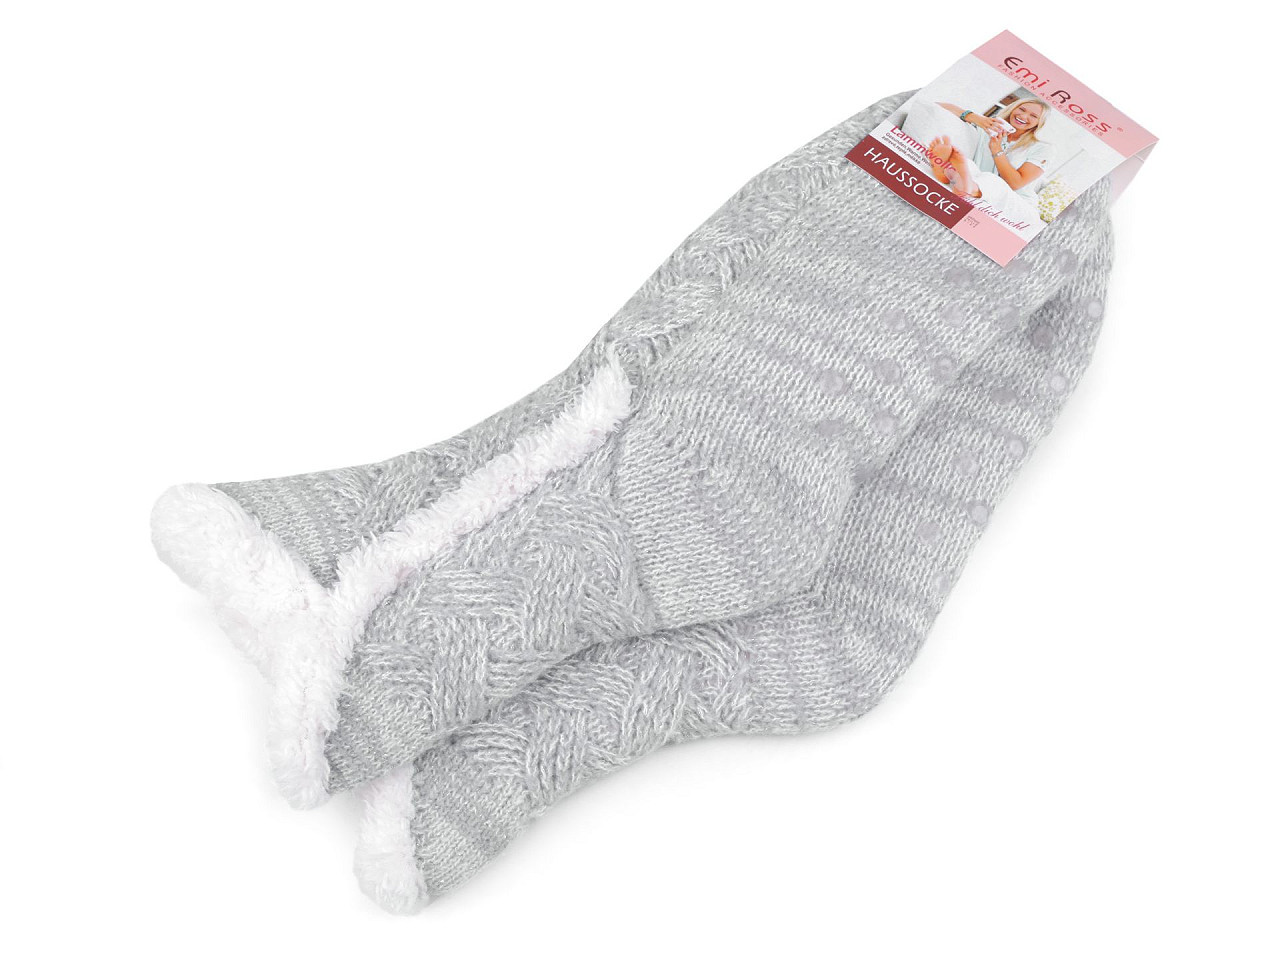 Ponožky zimní s kožíškem a protiskluzem Emi Ross, barva 7 (39-42) šedá nejsvětlejší